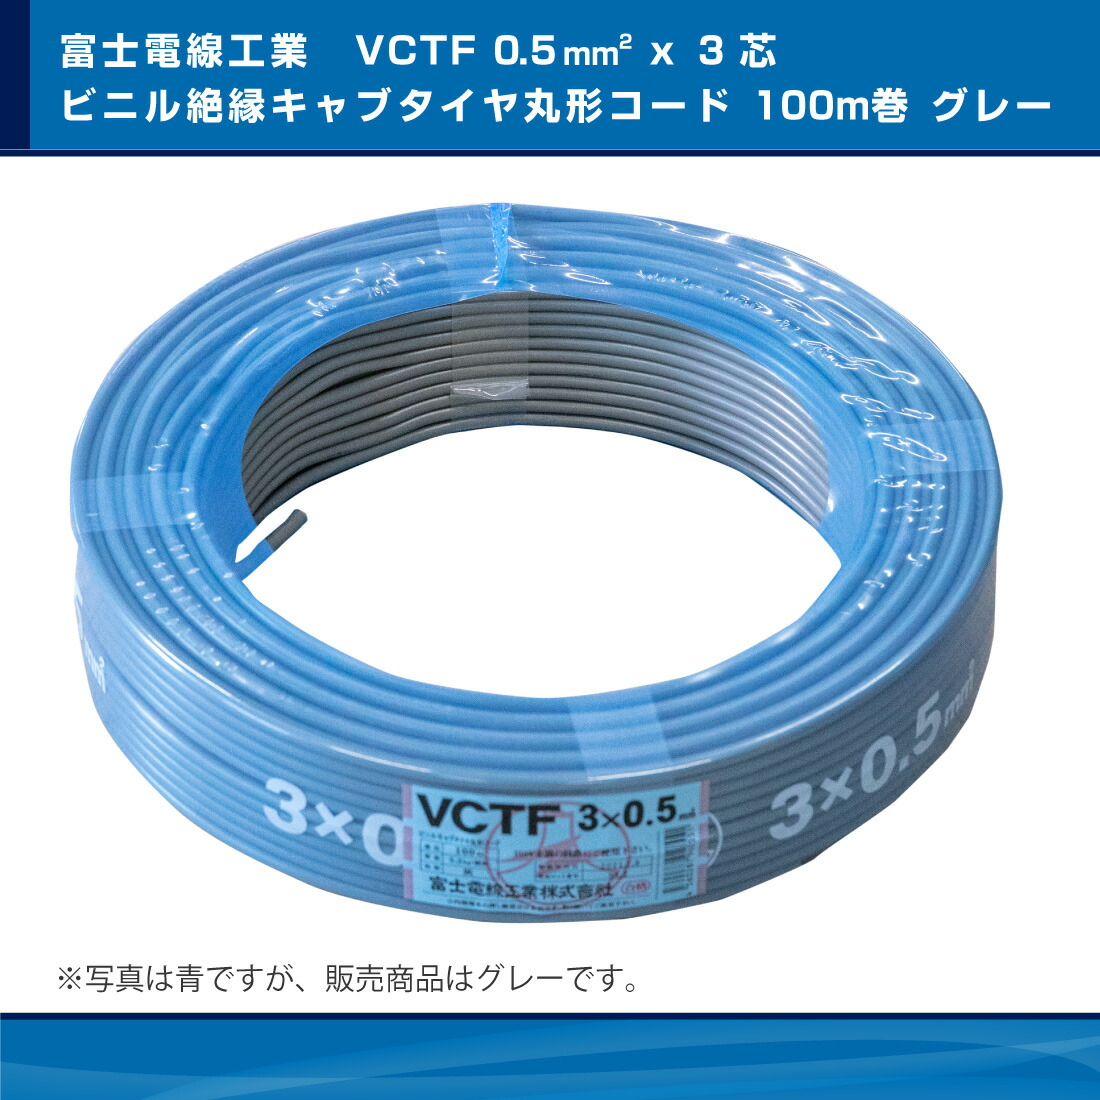 公式の 富士電線工業 VCT 3.5sqx10芯 ビニルキャブタイヤケーブル 3.5mm 10C 10心 定尺 100m VCT-3.5-10C-100m 